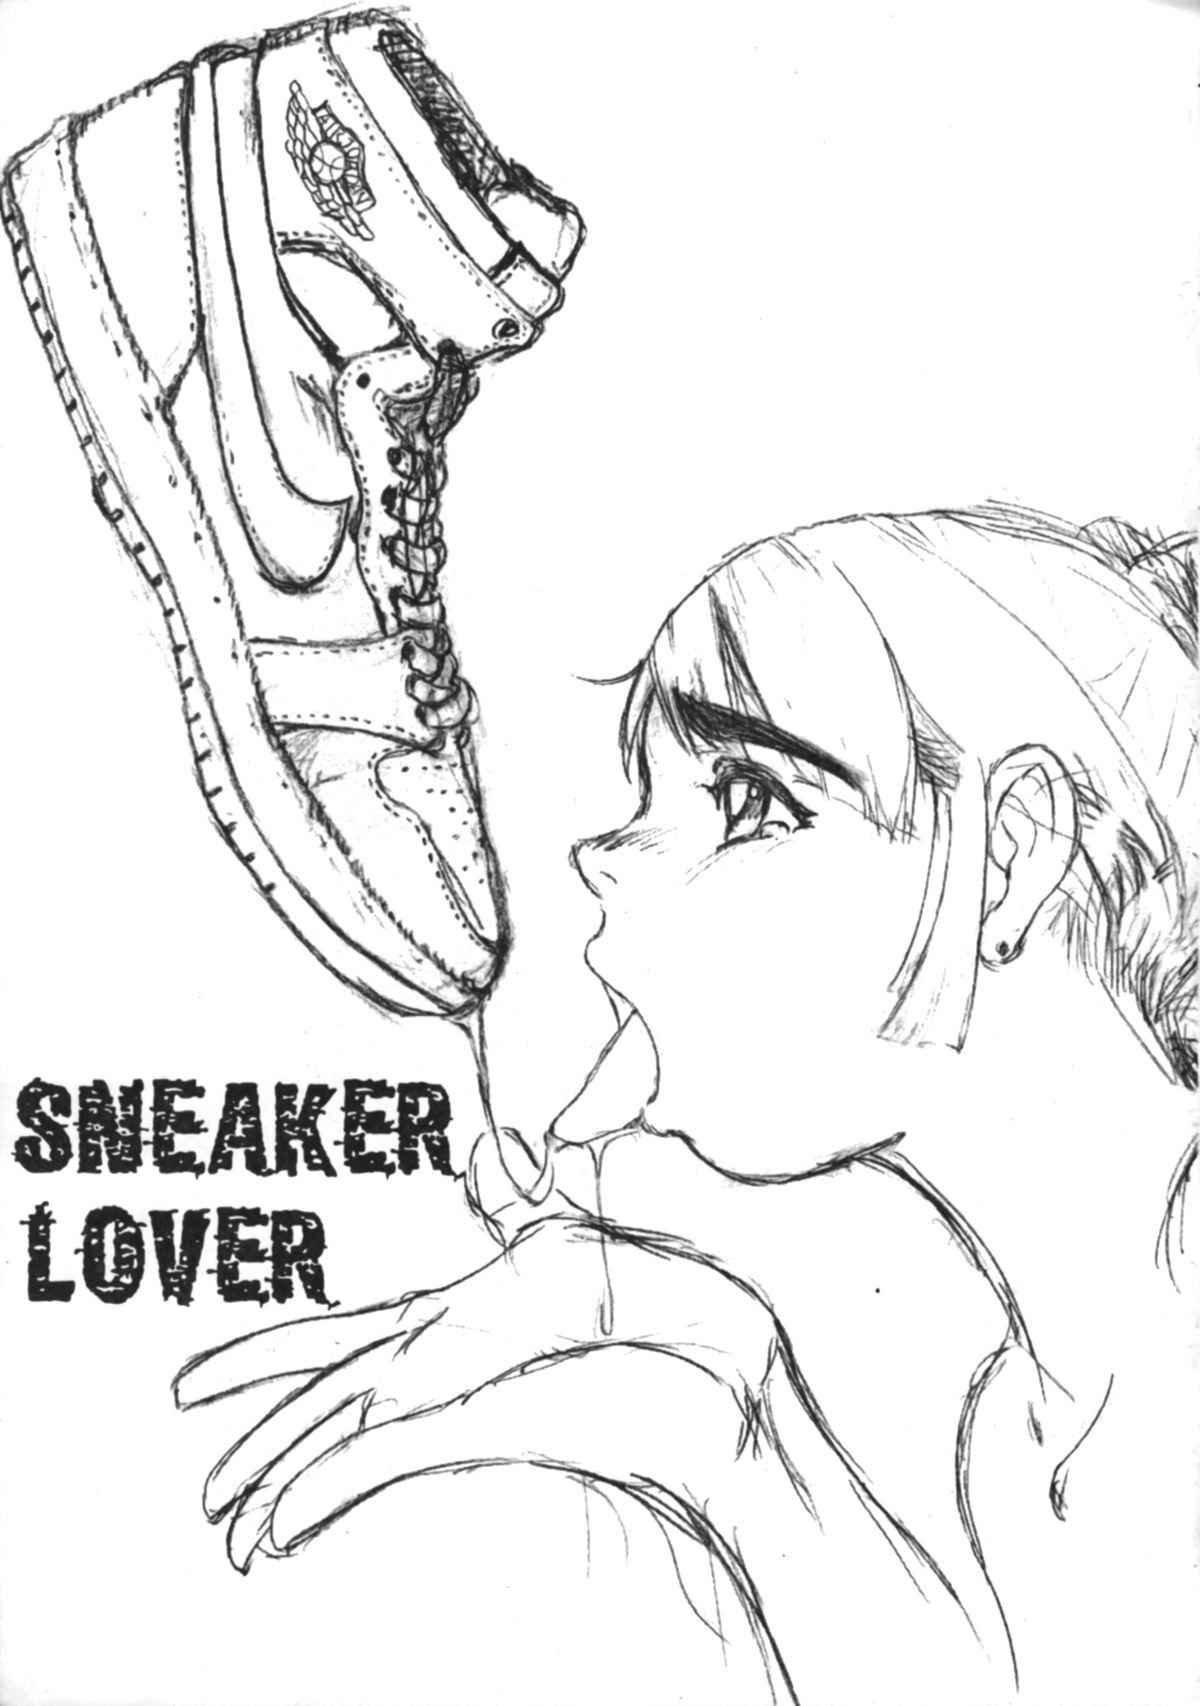 Sneaker Lover 2